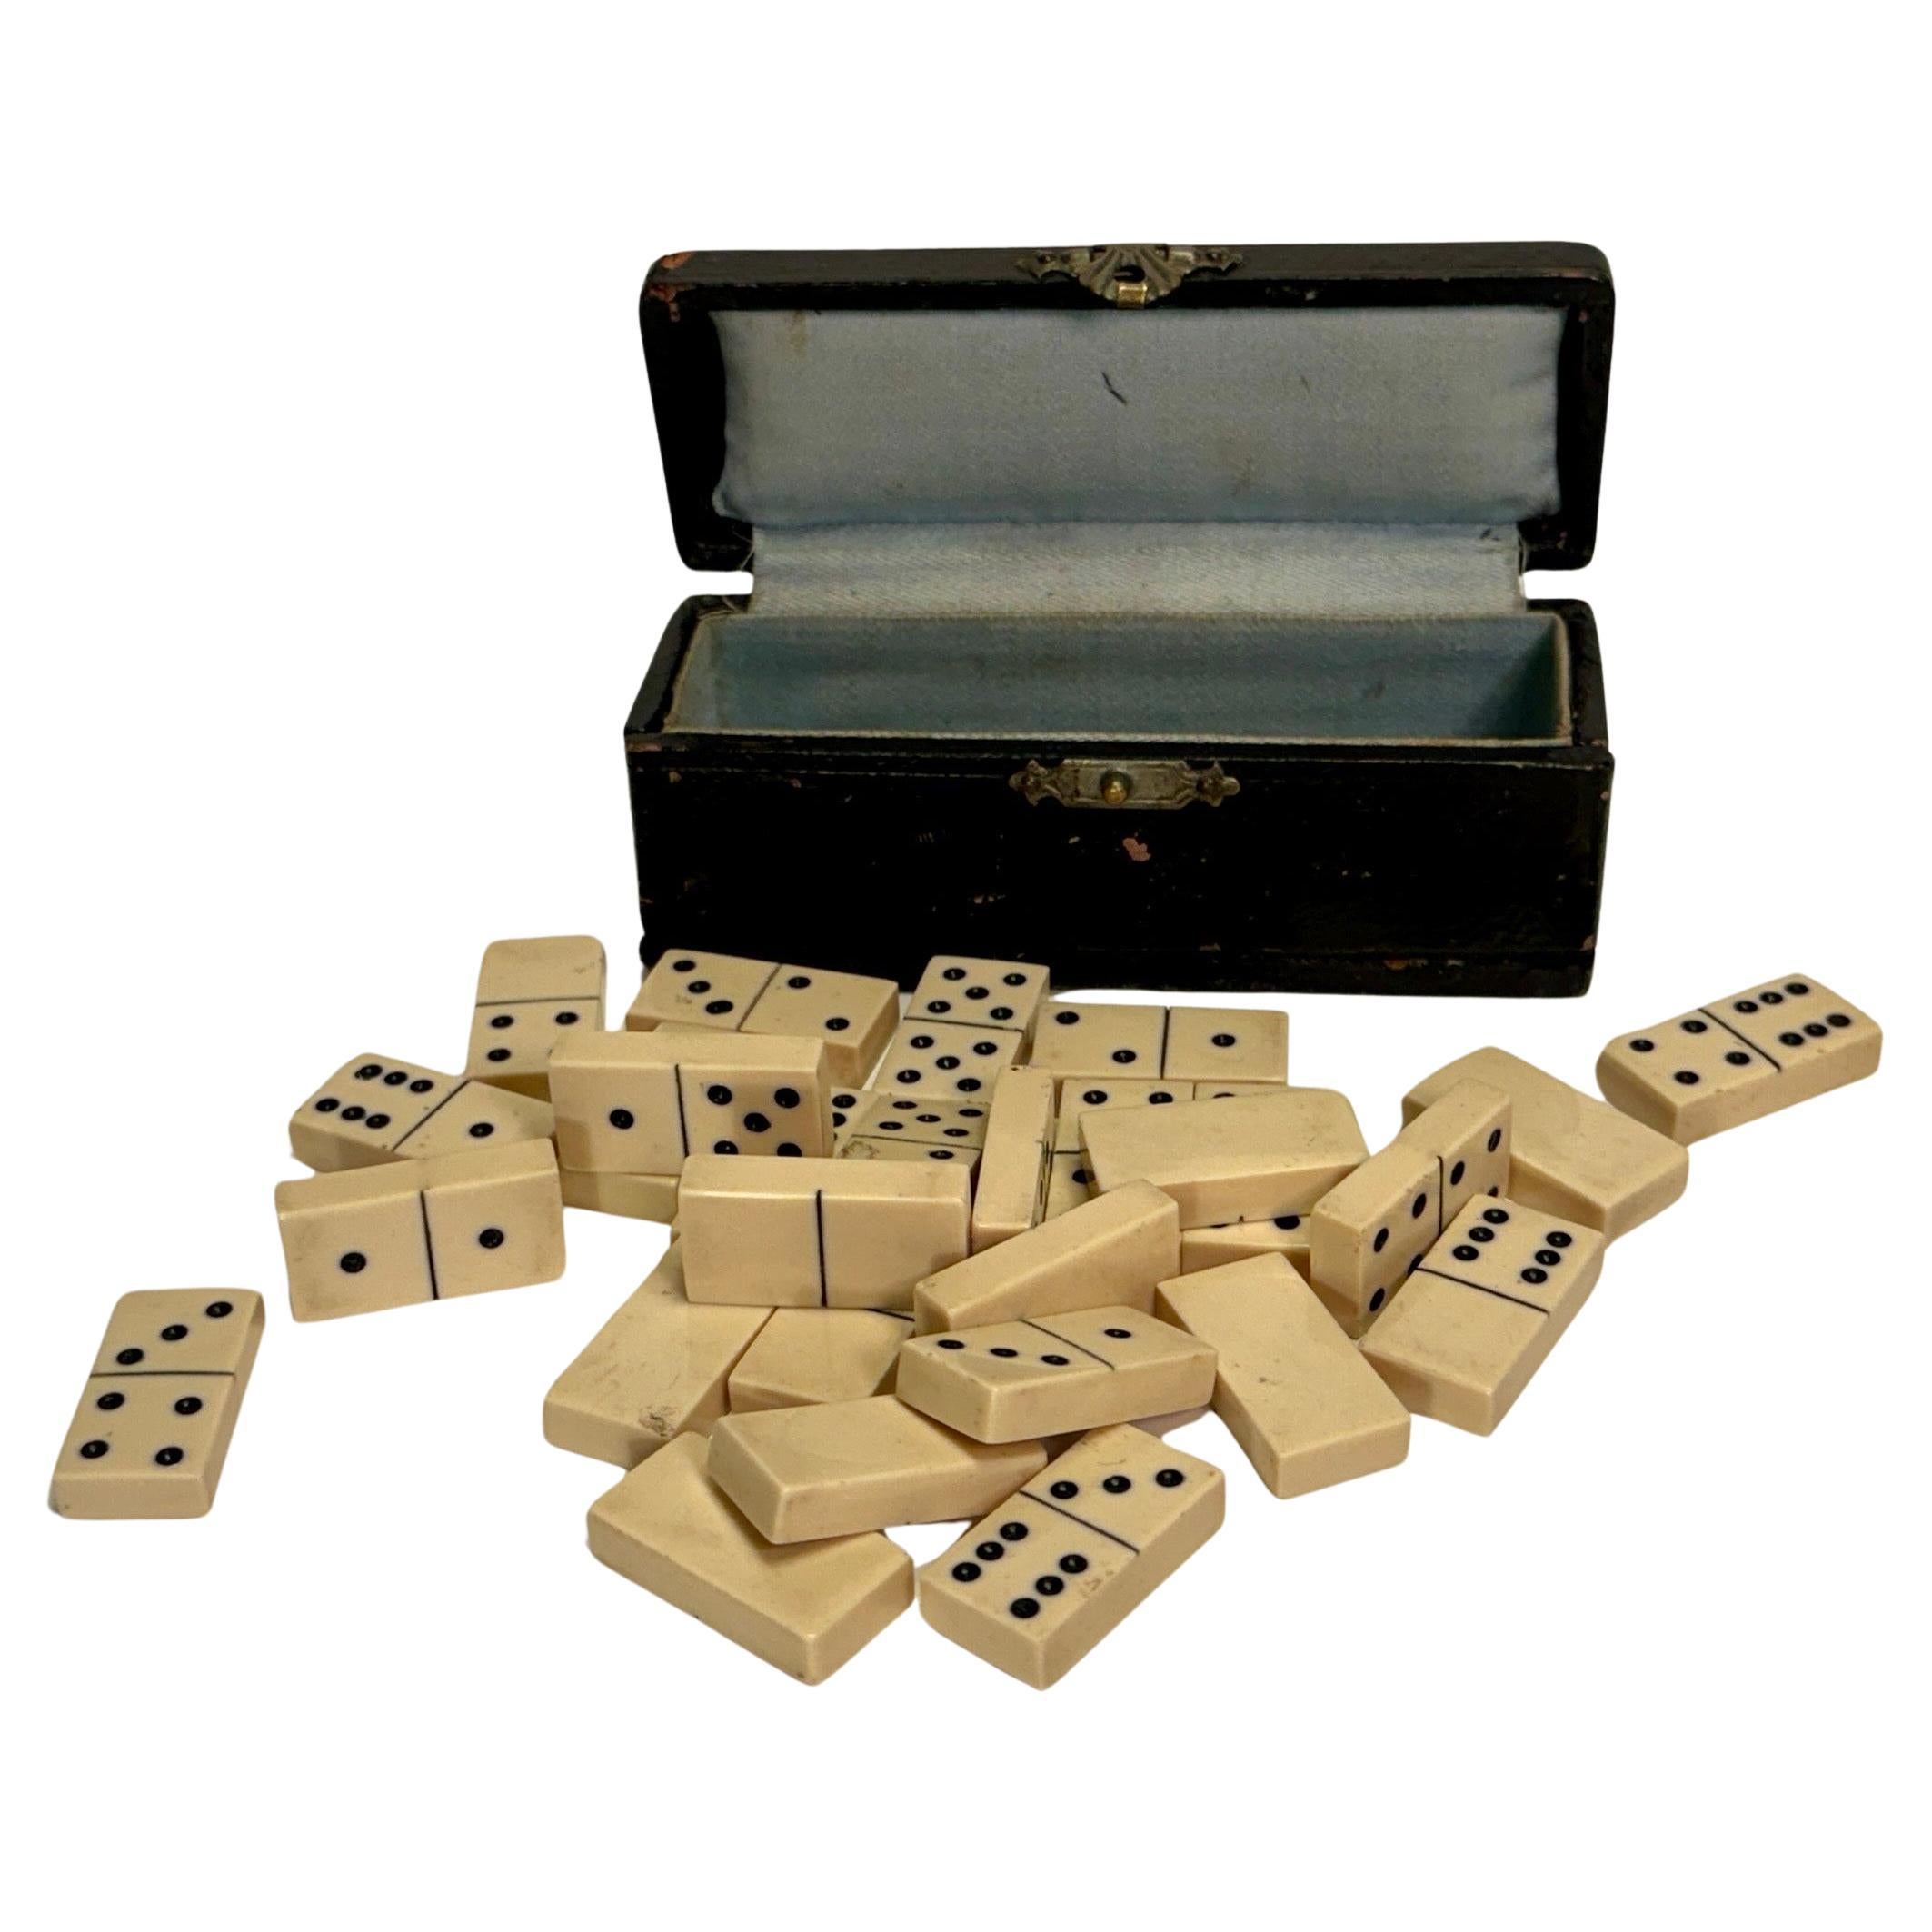 Petite boîte en cuir noir contenant un jeu de société Dominos, 28 pièces en vente